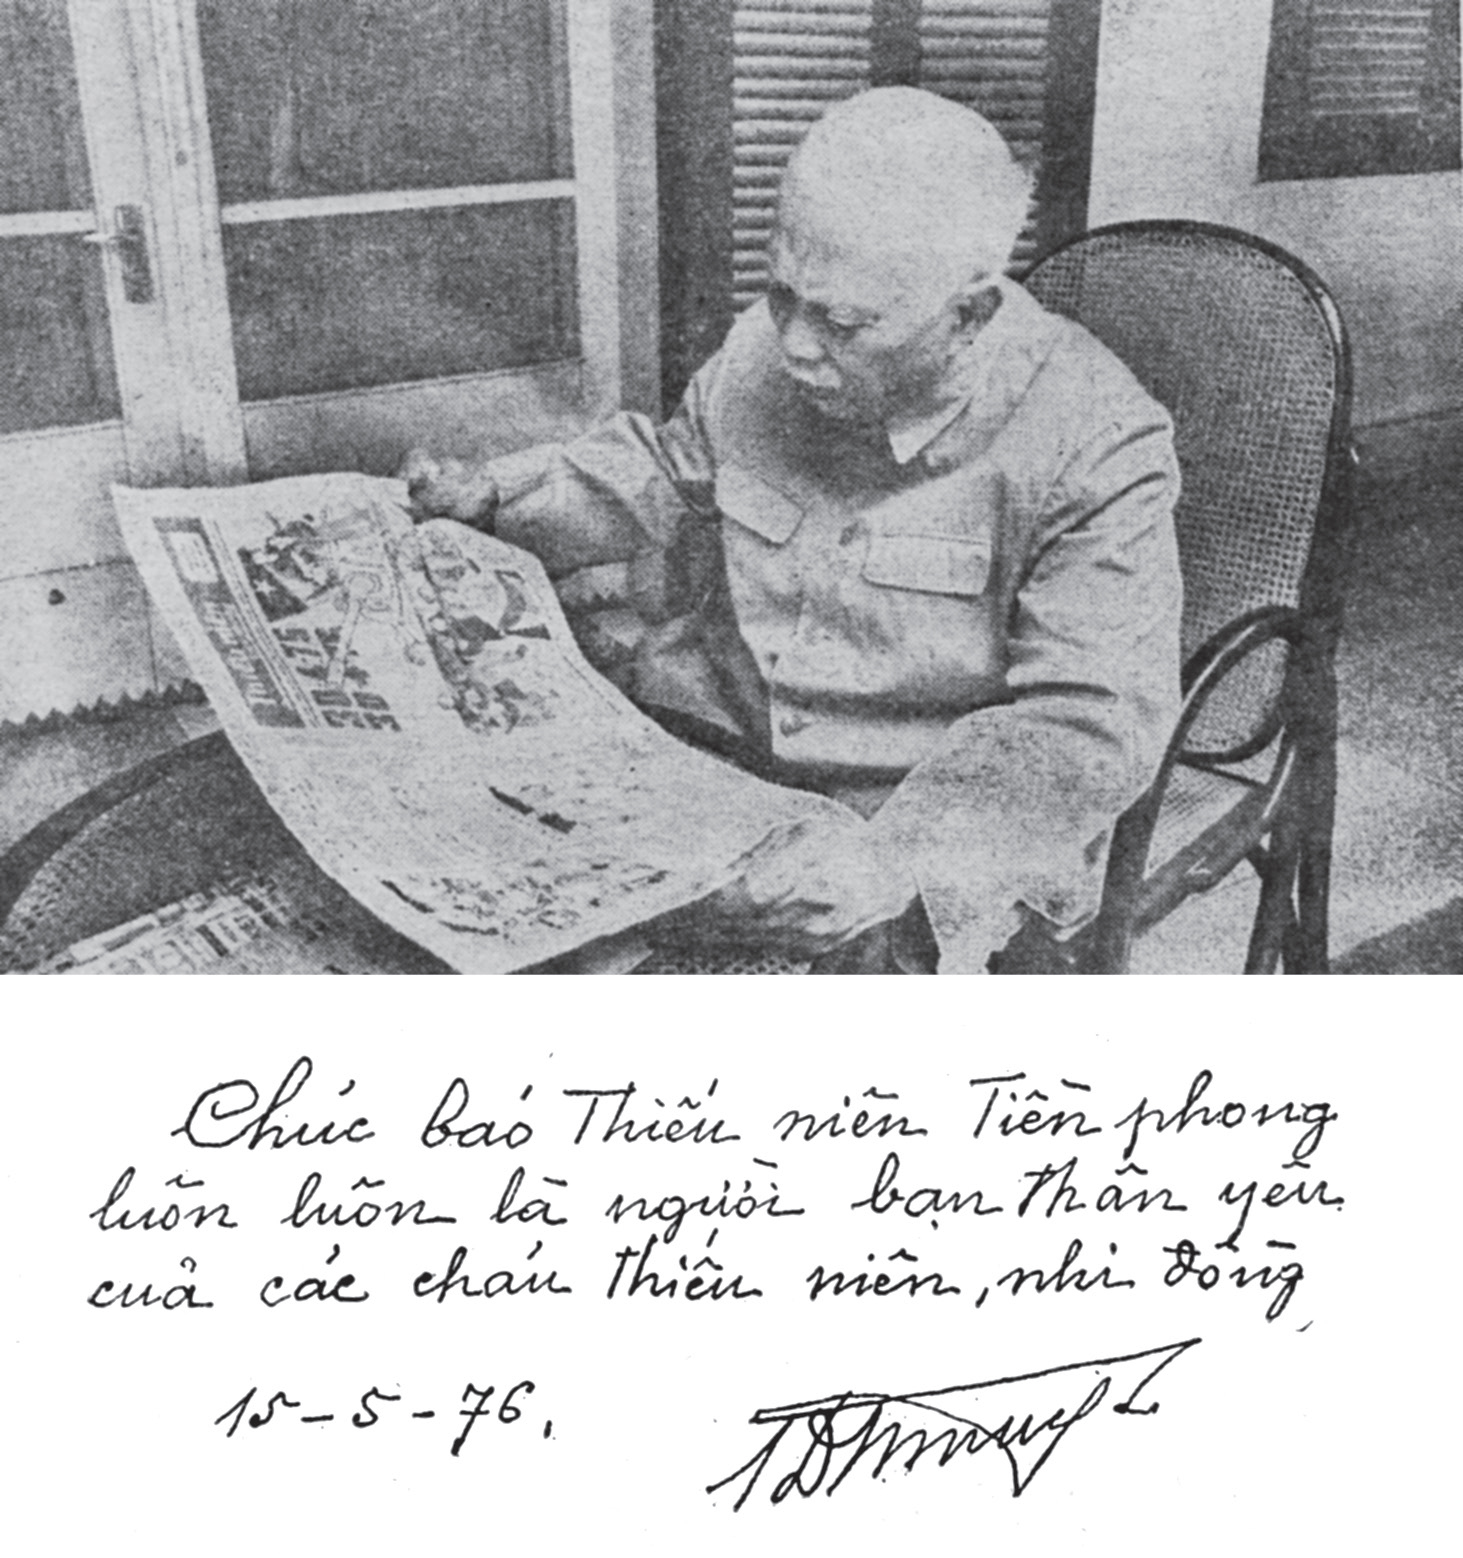 Chủ tịch nước Tôn Đức Thắng đọc báo Đội và bút tích Bác đề tặng
tấm ảnh quý cho báo Thiếu niên Tiền phong nhân Kỷ niệm 35 năm
Ngày thành lập Đội TNTP Hồ Chí Minh.